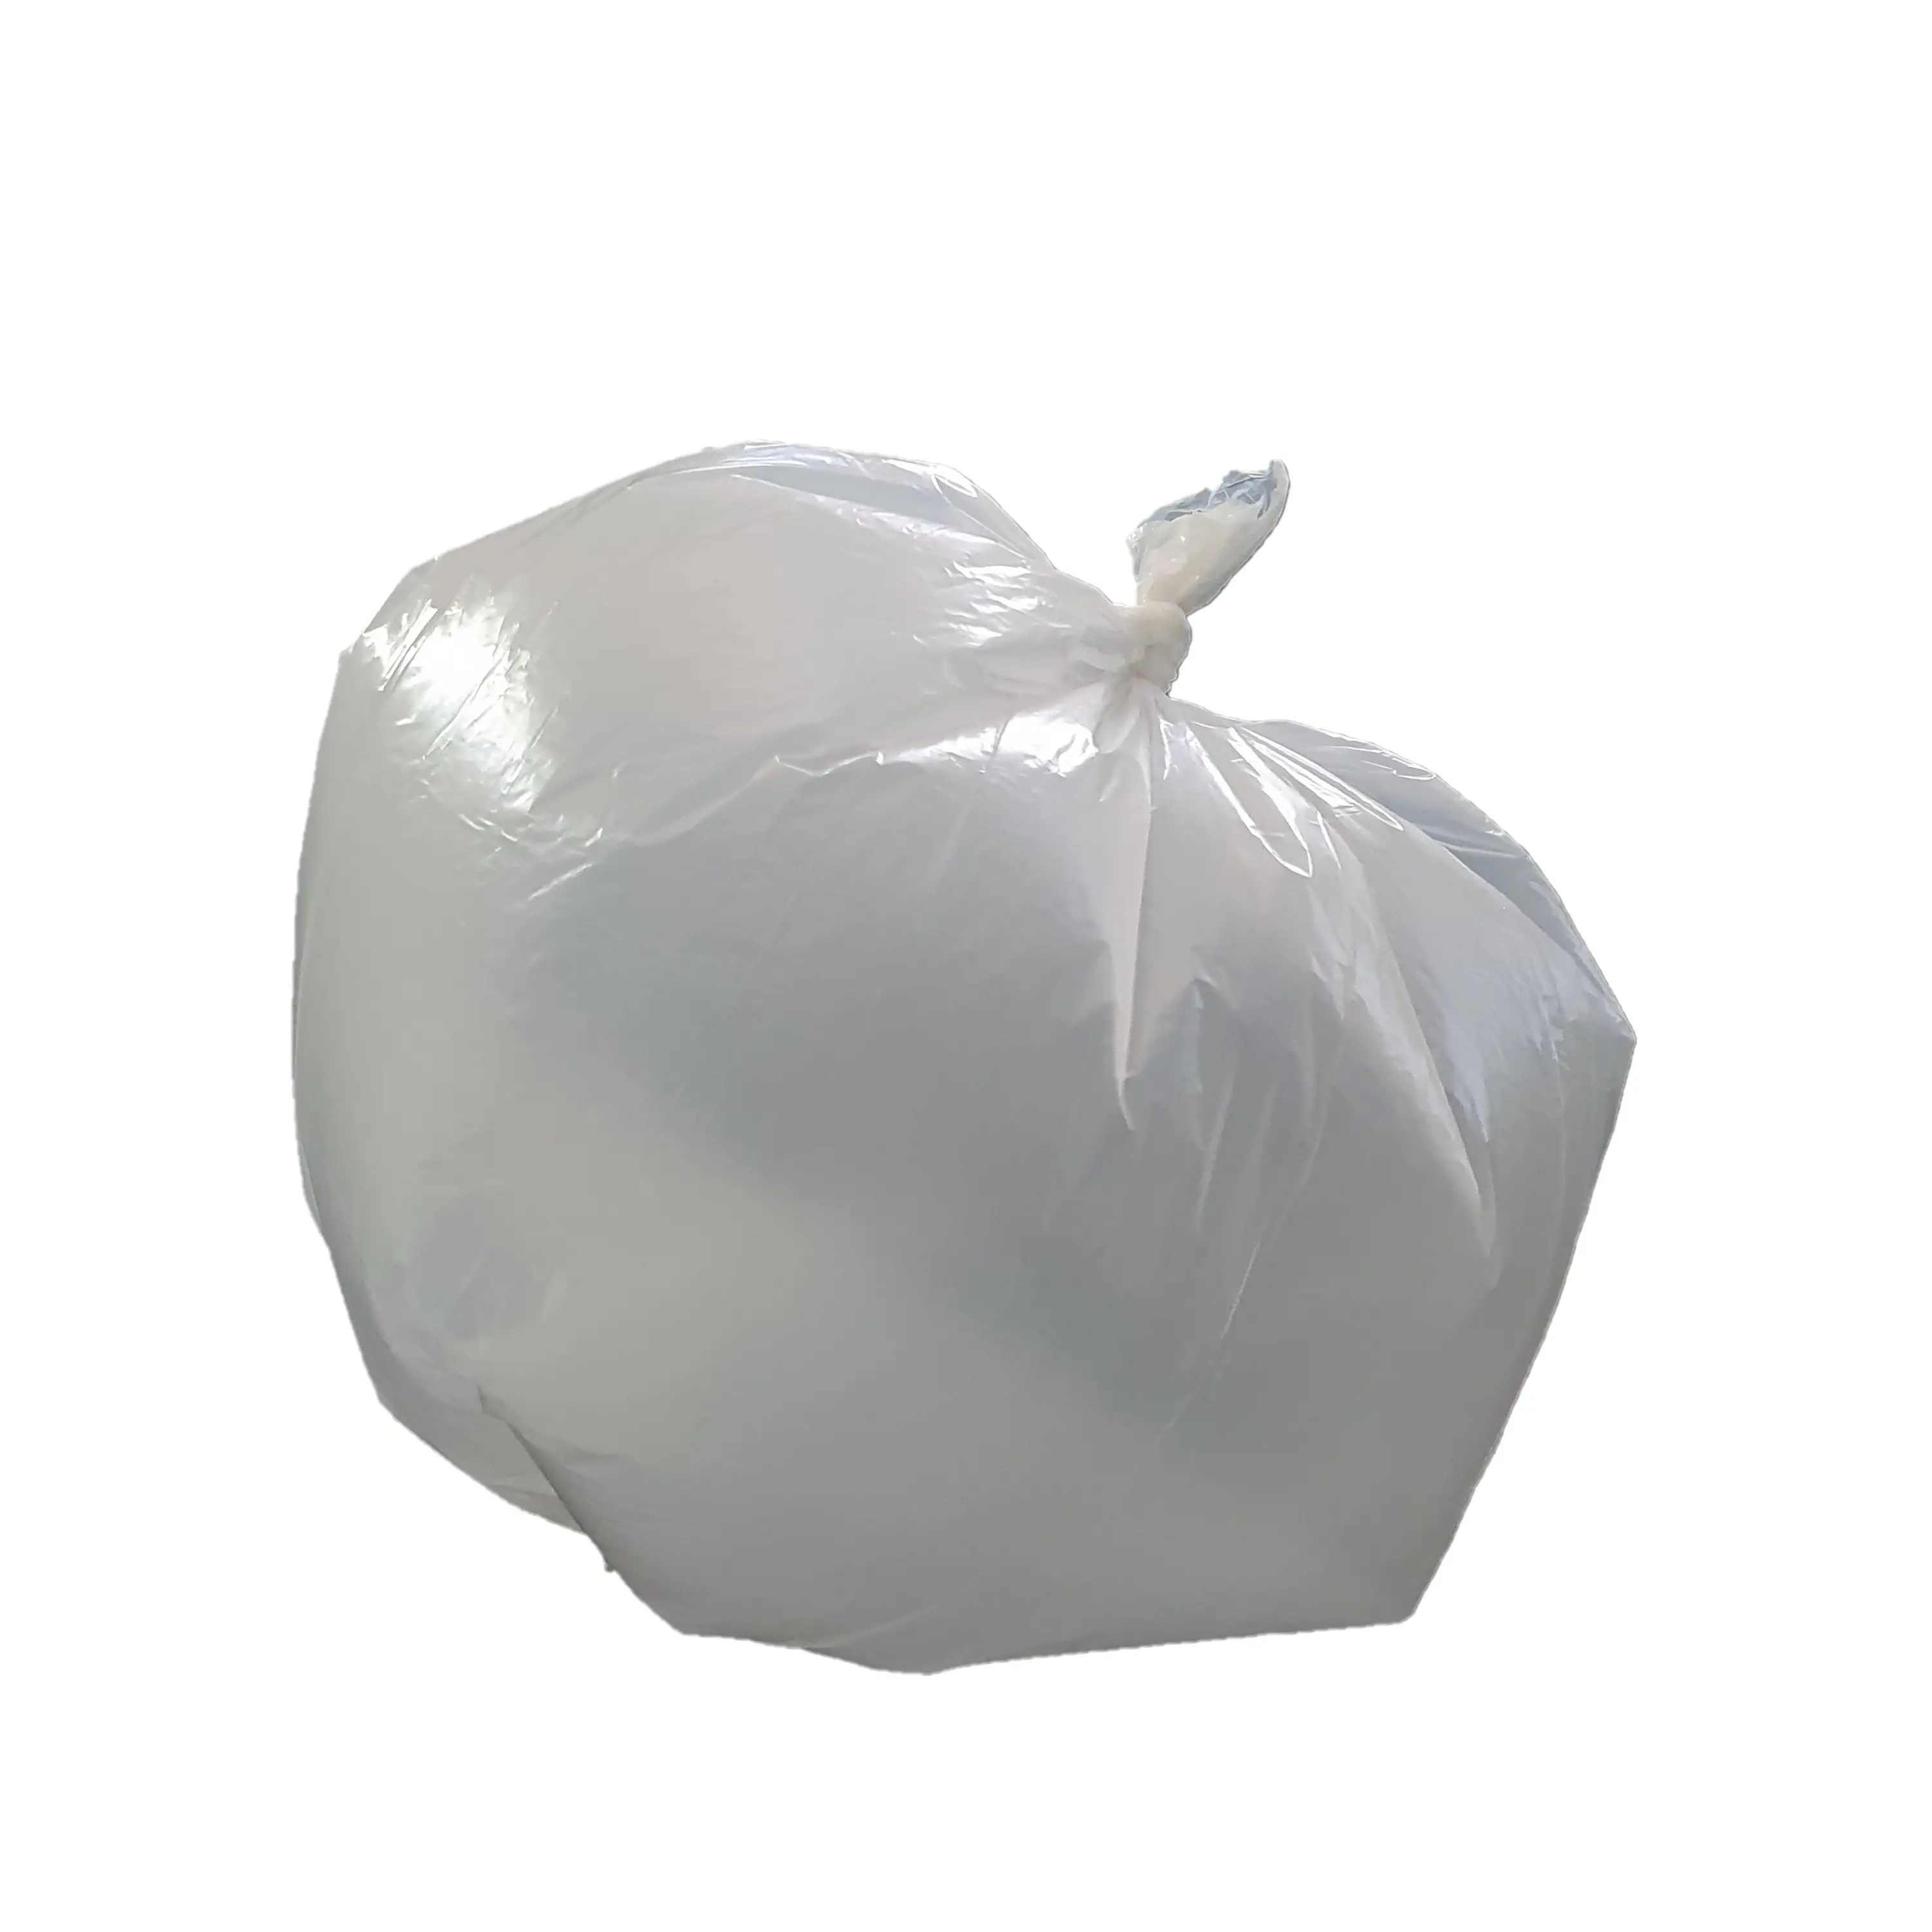 Beyaz renk parça formu çöp torbası üreticisi kağıt etiket toptan